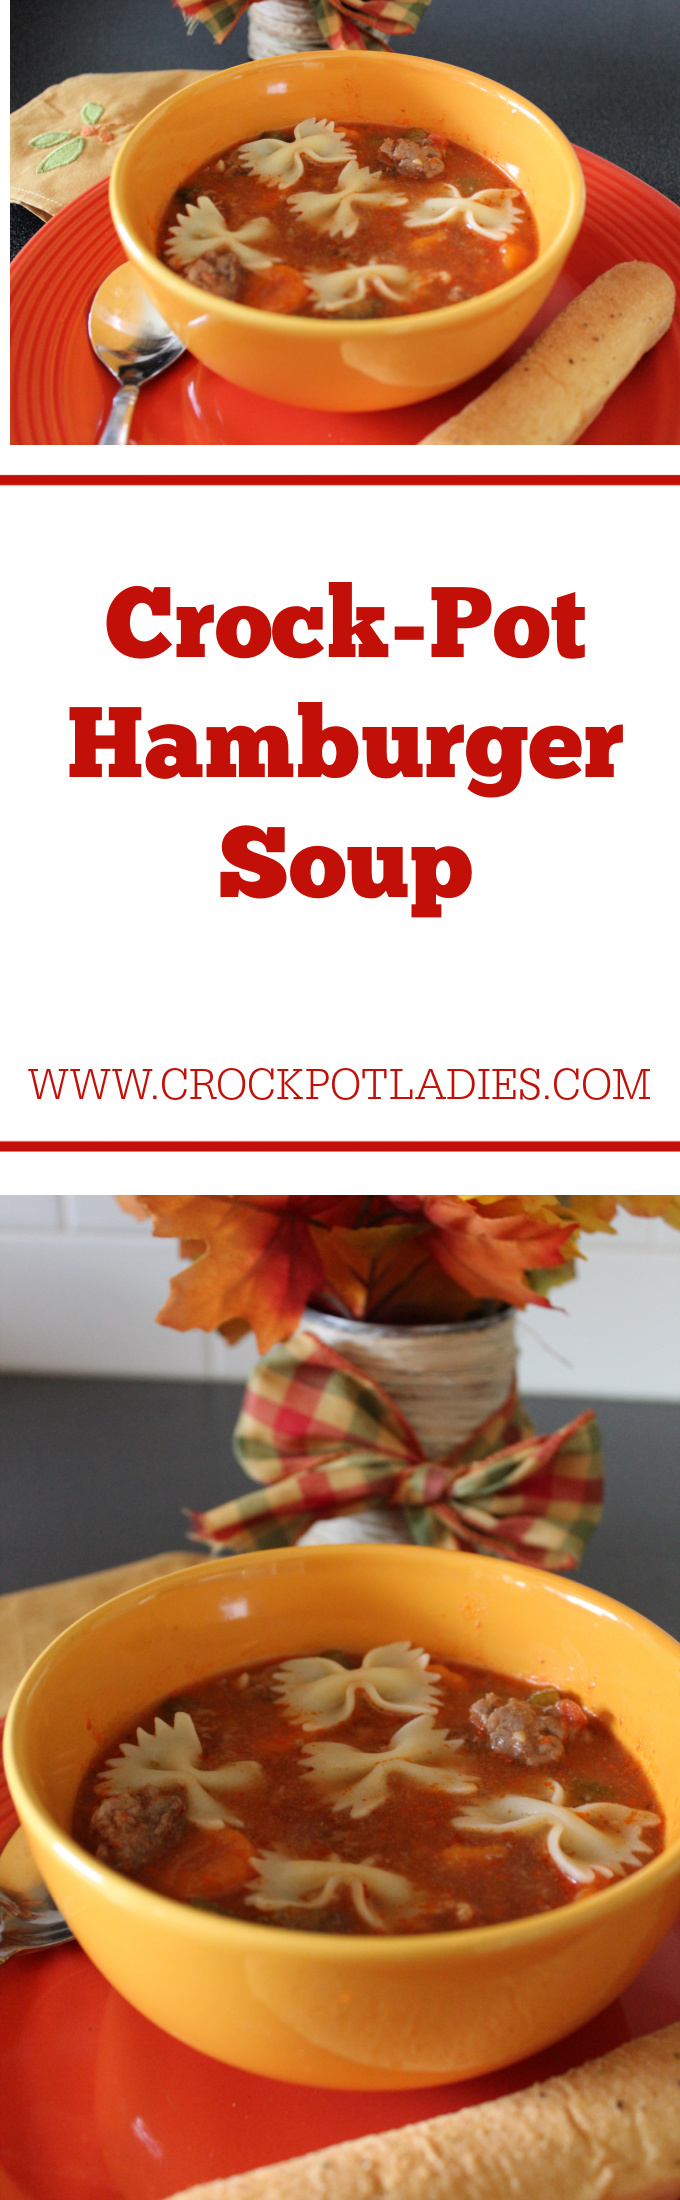 Crock-Pot Hamburger Soup